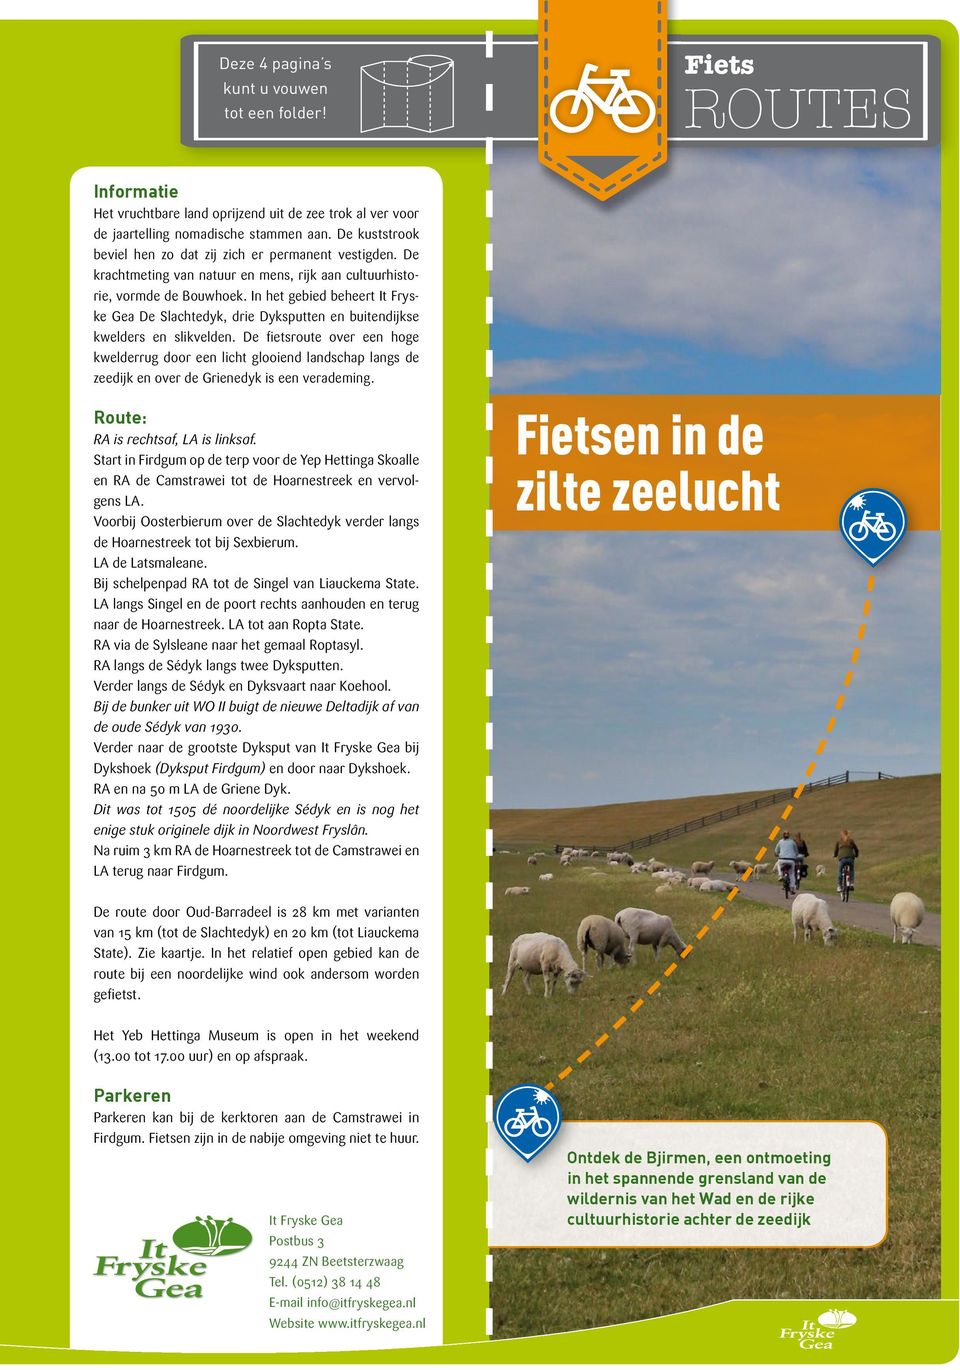 In het gebied beheert It Fryske Gea De Slachtedyk, drie Dyksputten en buitendijkse kwelders en slikvelden.